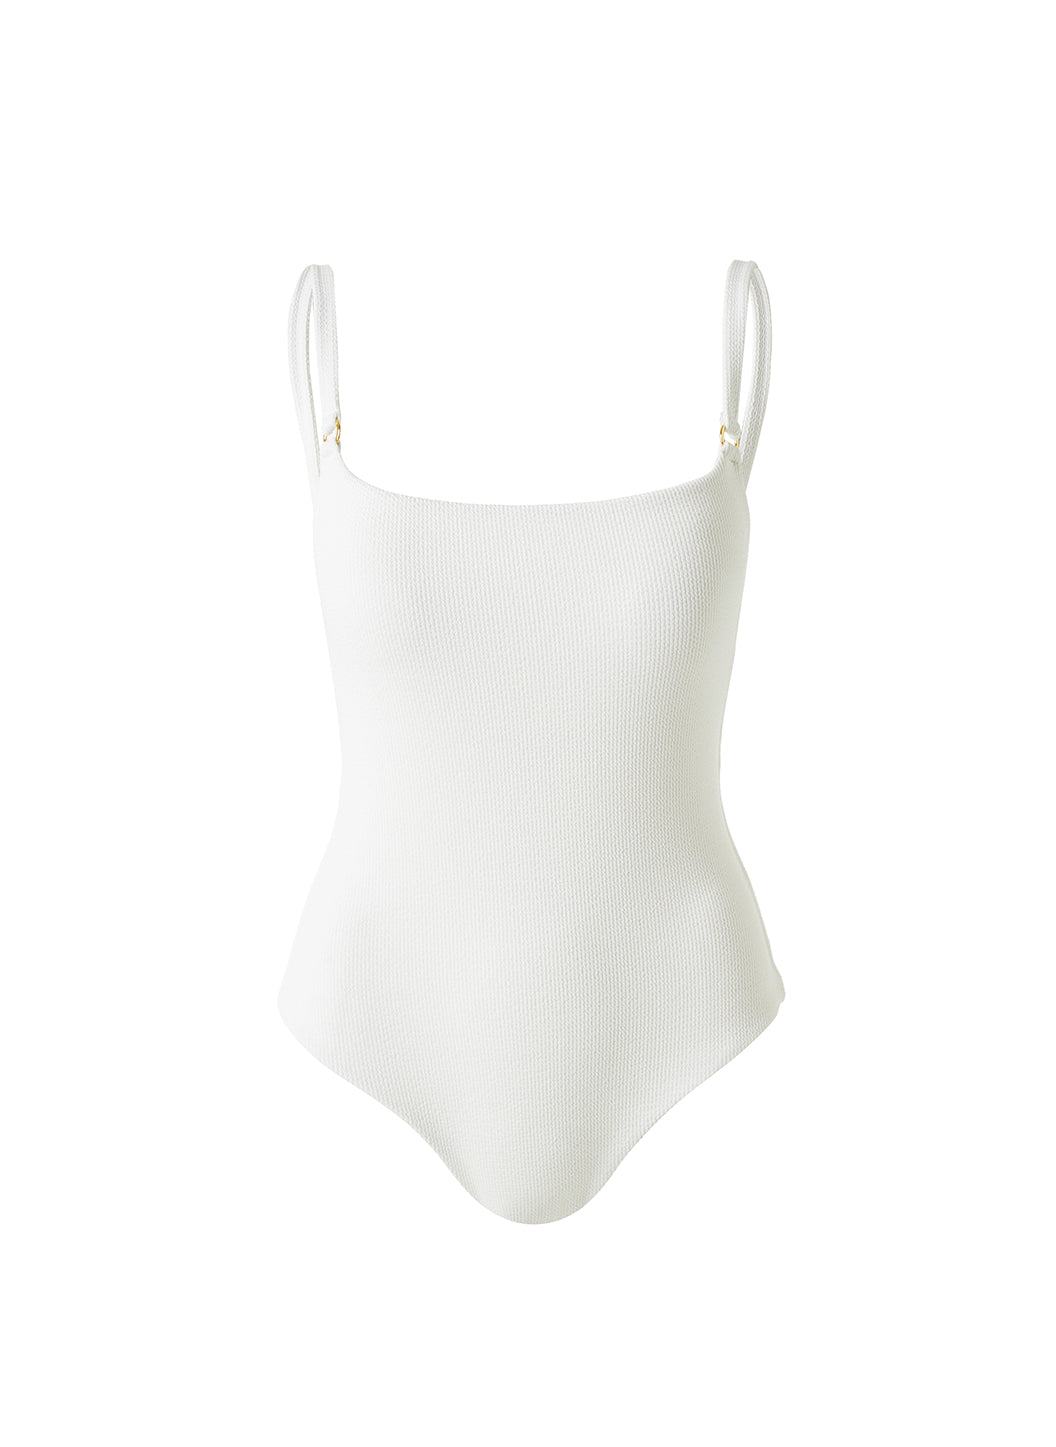 Tosca_White_Ridges_Swimsuit_Cutout_2023